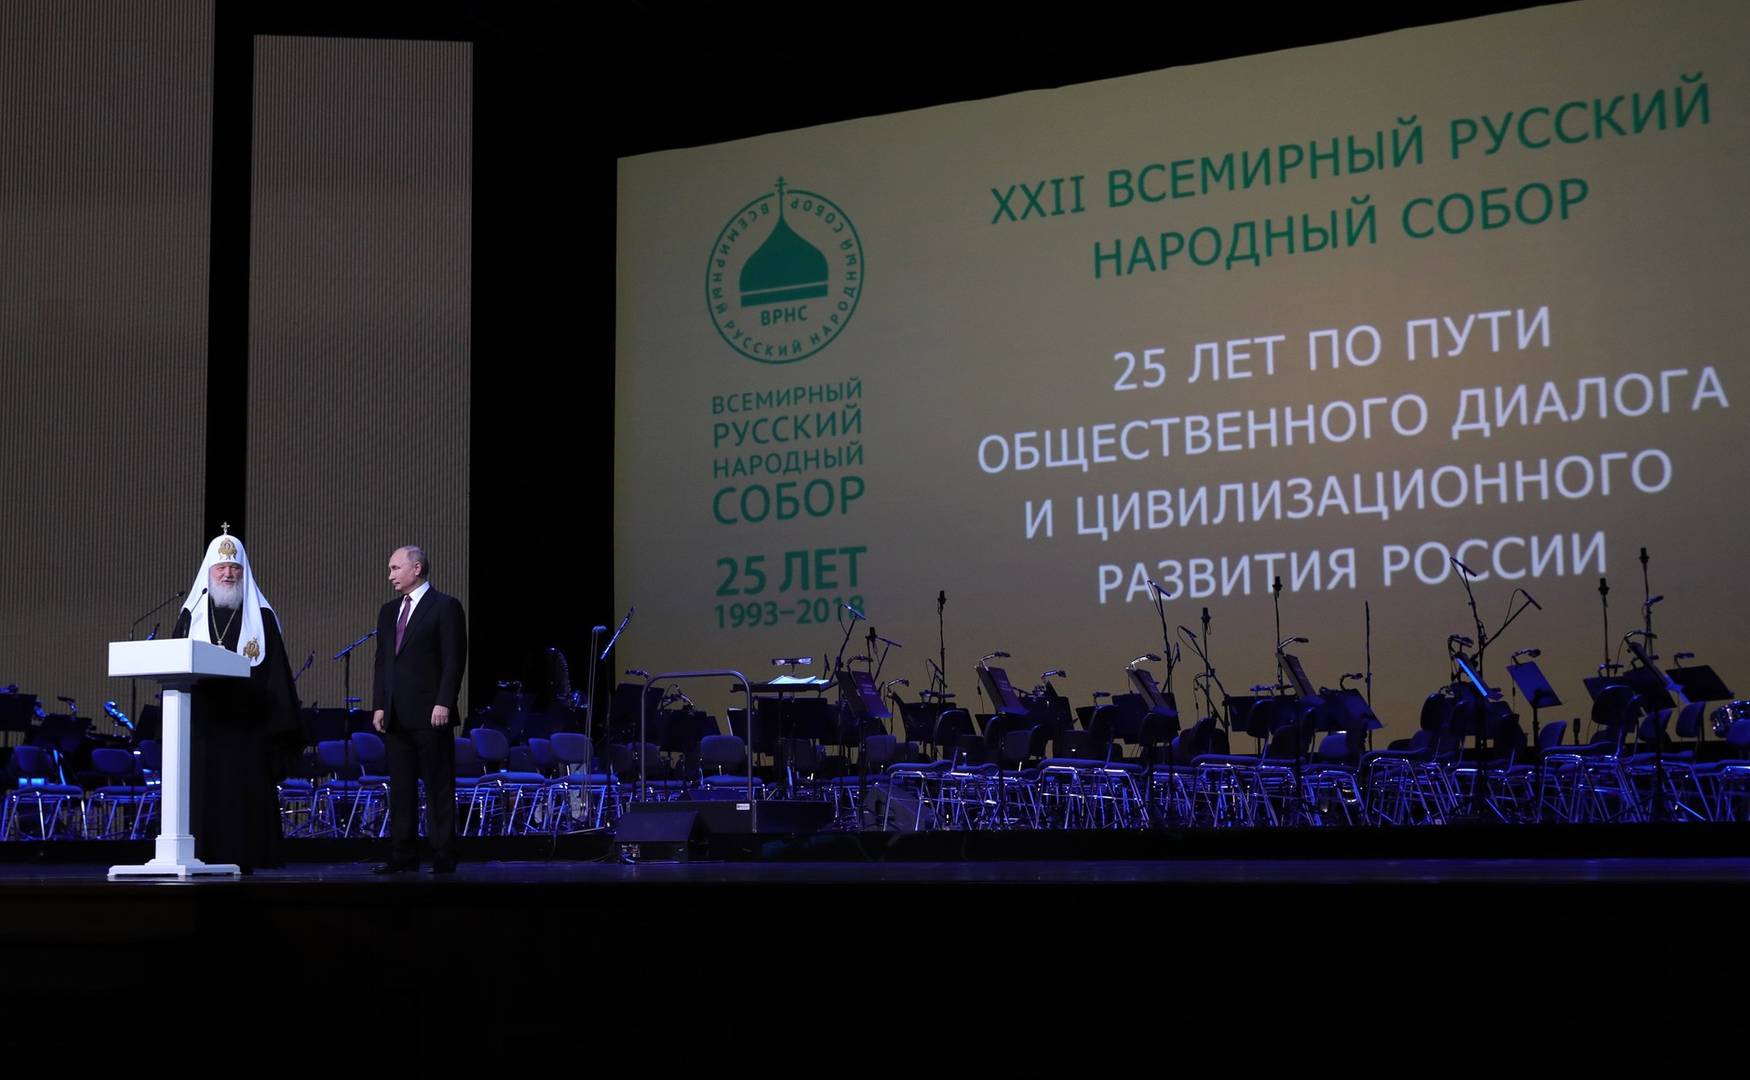 Президент РФ с патриархом на пленарном заседании Всемирного русского народного собора